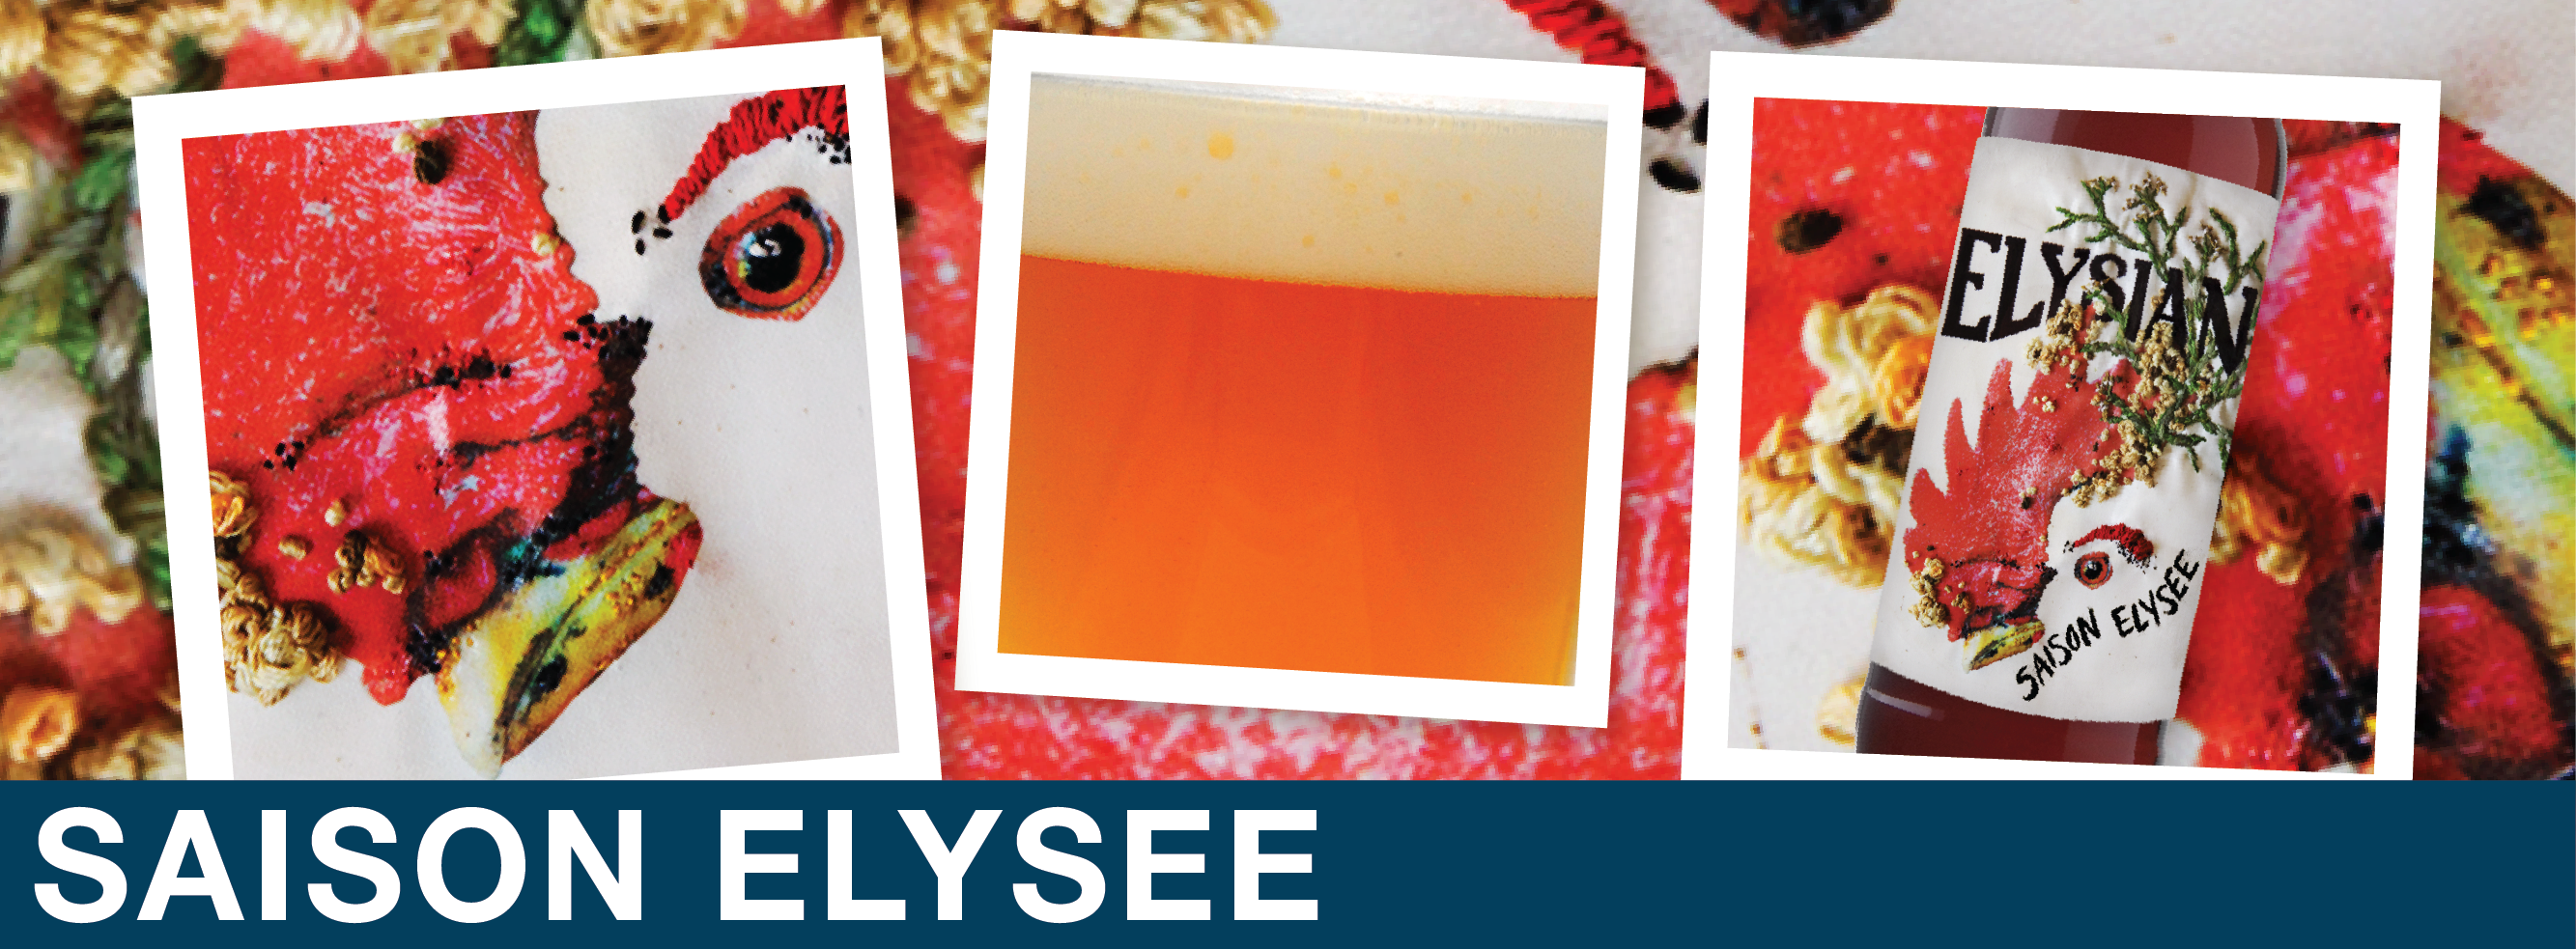 elysian-brewing-saison-elysee